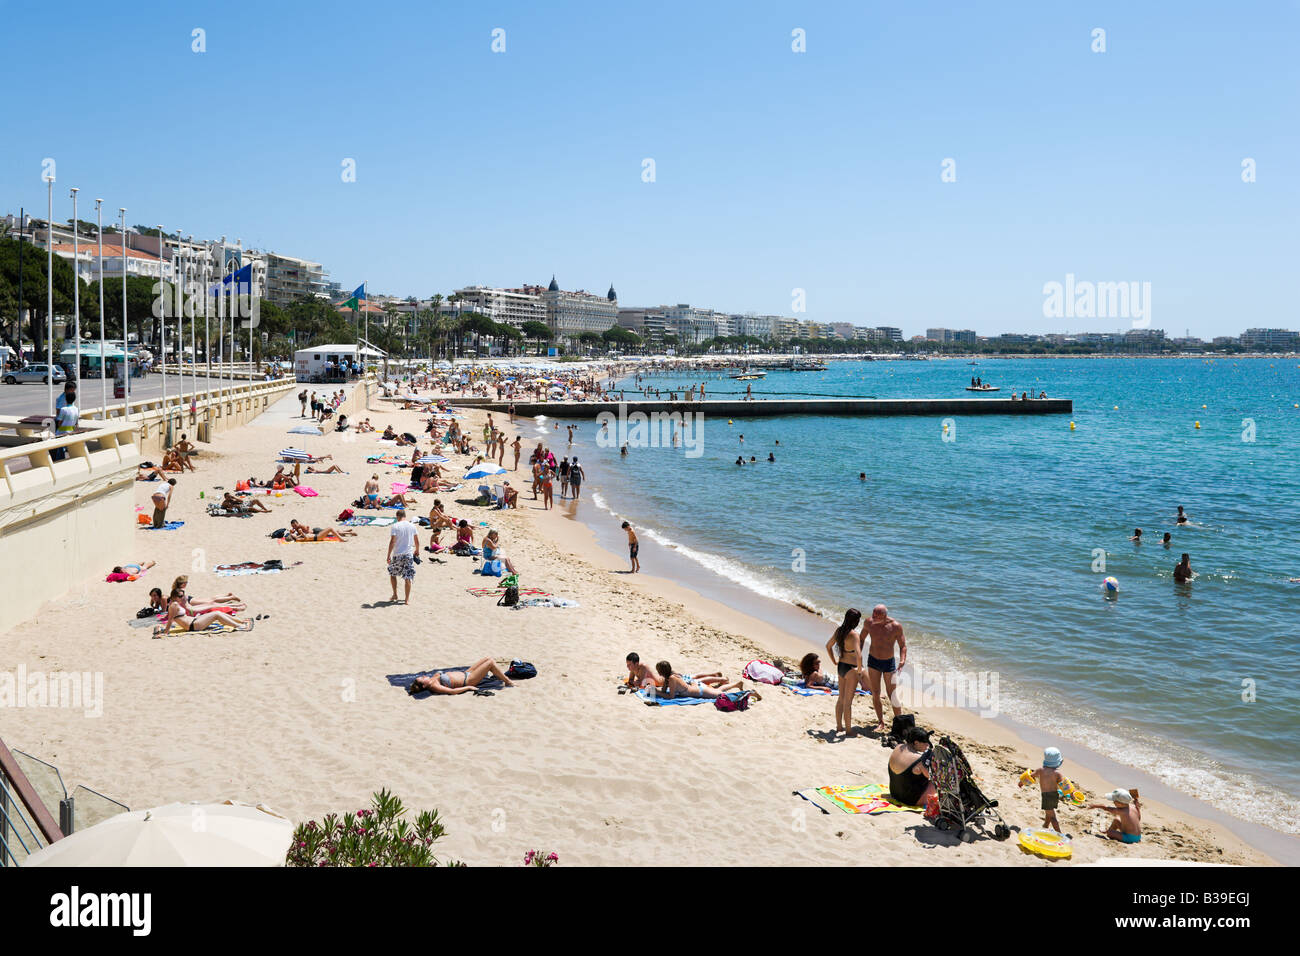 Beach outside the Palais des Festivals, Promenade de la Croisette, Cannes, Cote d'Azur, Provence, France Stock Photo